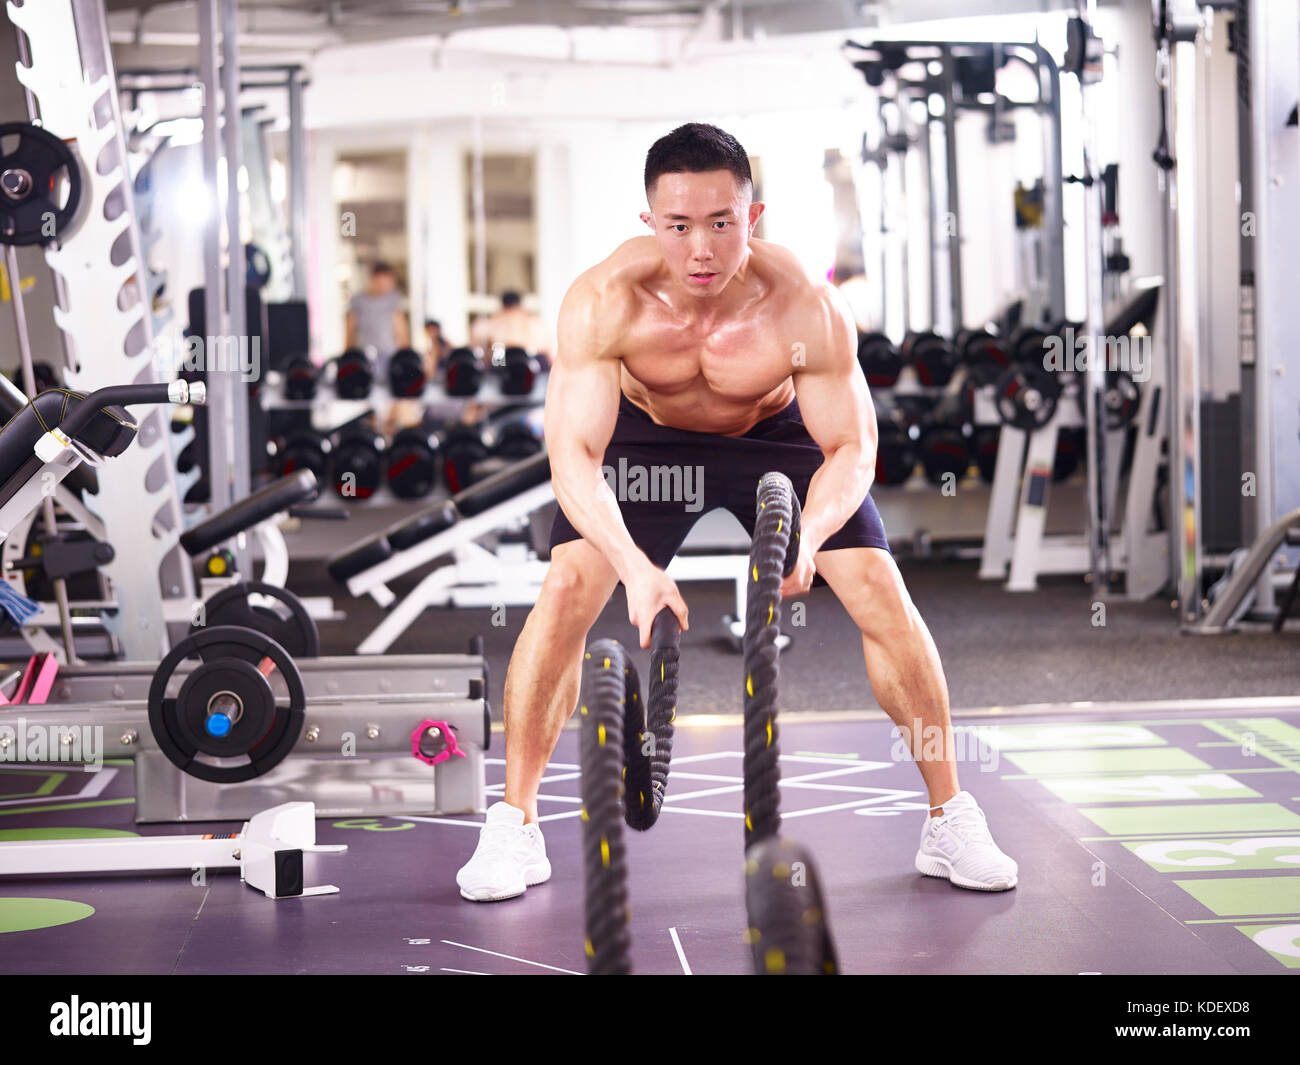 Asiatische männlichen Bodybuilder trainieren Sie im Fitnessraum mit Schlacht Seile. Stockfoto